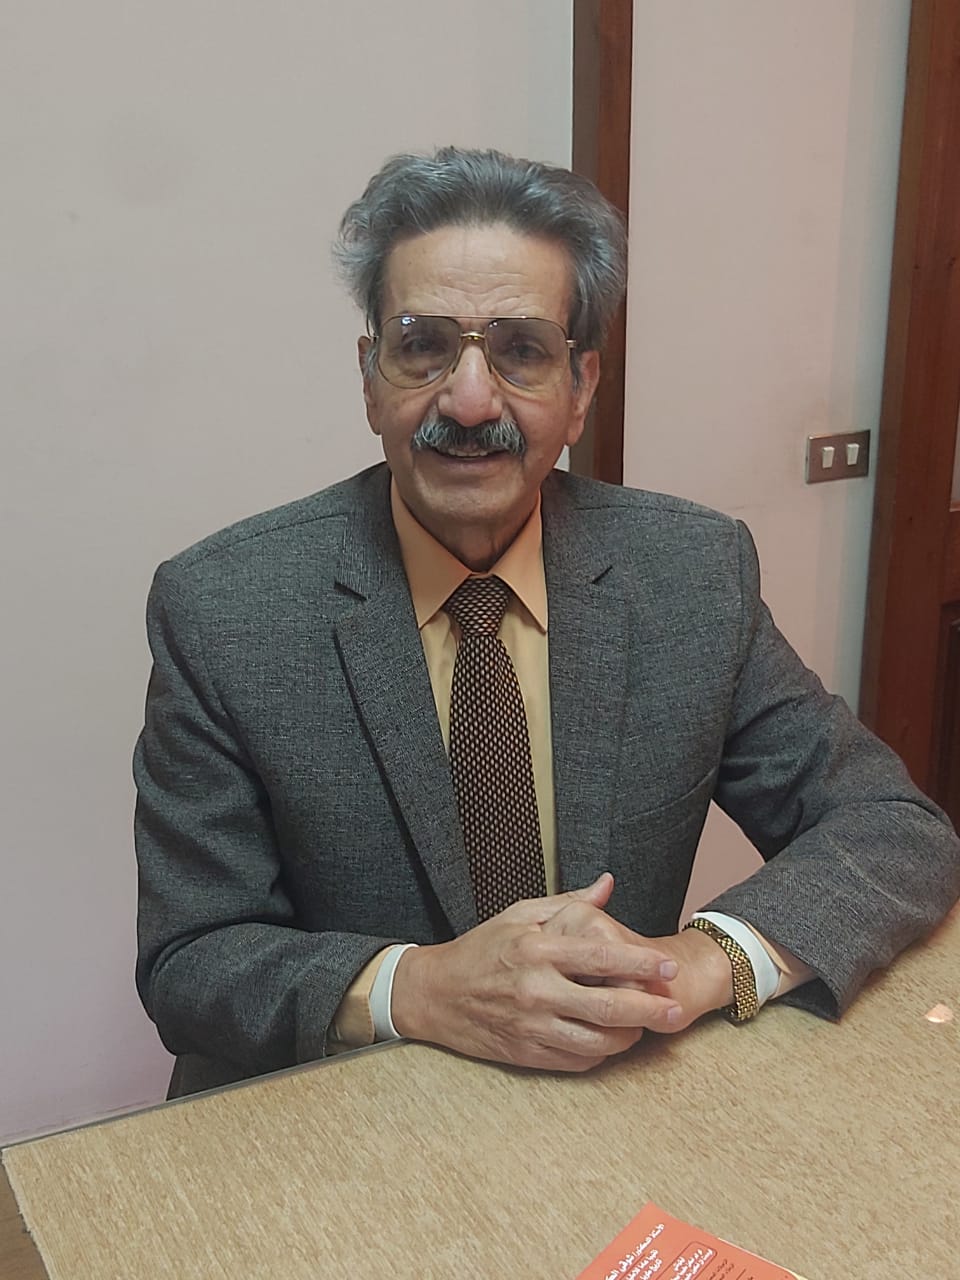 الحوار مع العالم المصرى دكتور شوقى الكردى مؤسس علم الاقتصاد البيطرى ( الجزأ الثانى )